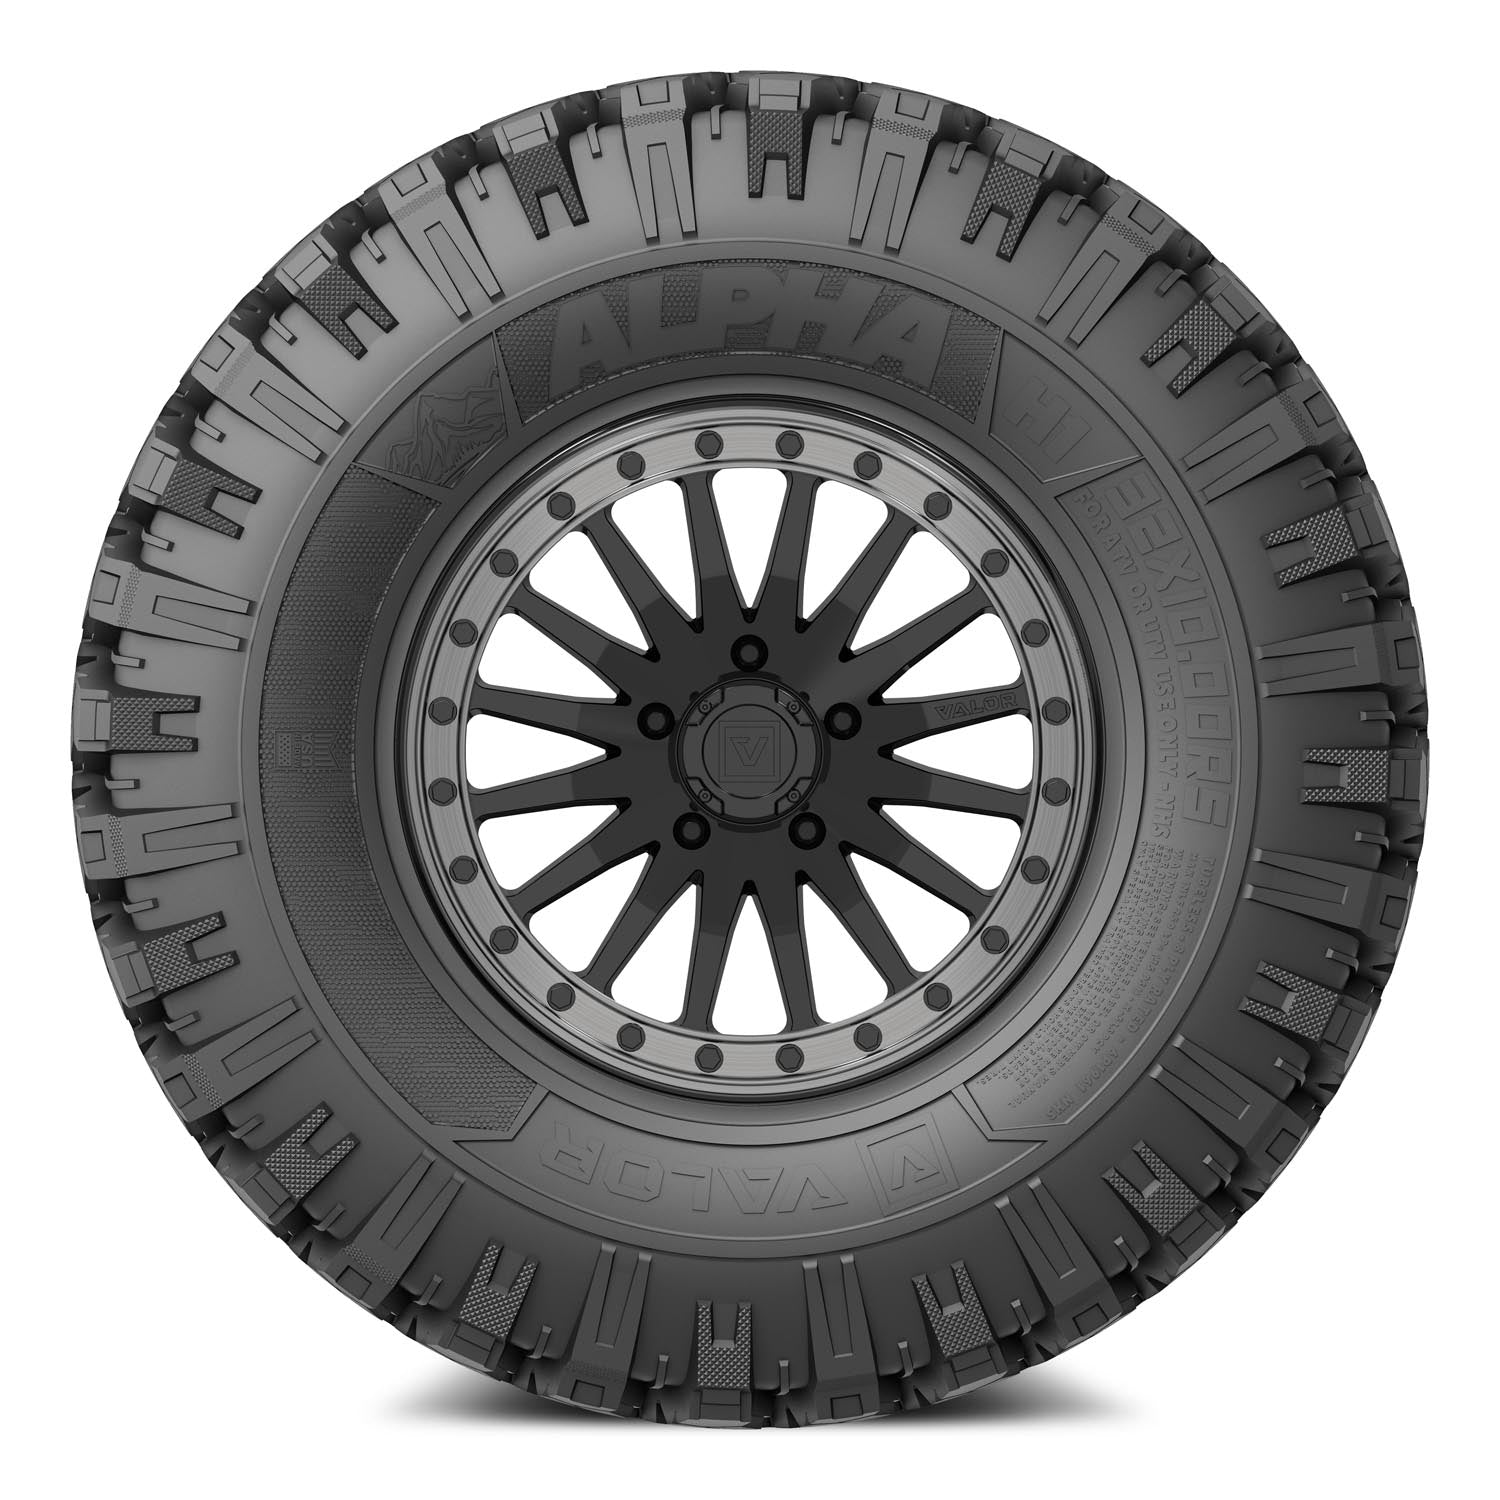 Valor Offroad UTV Tires and wheels - V06 UTV Wheel on Alpha UTV Tire